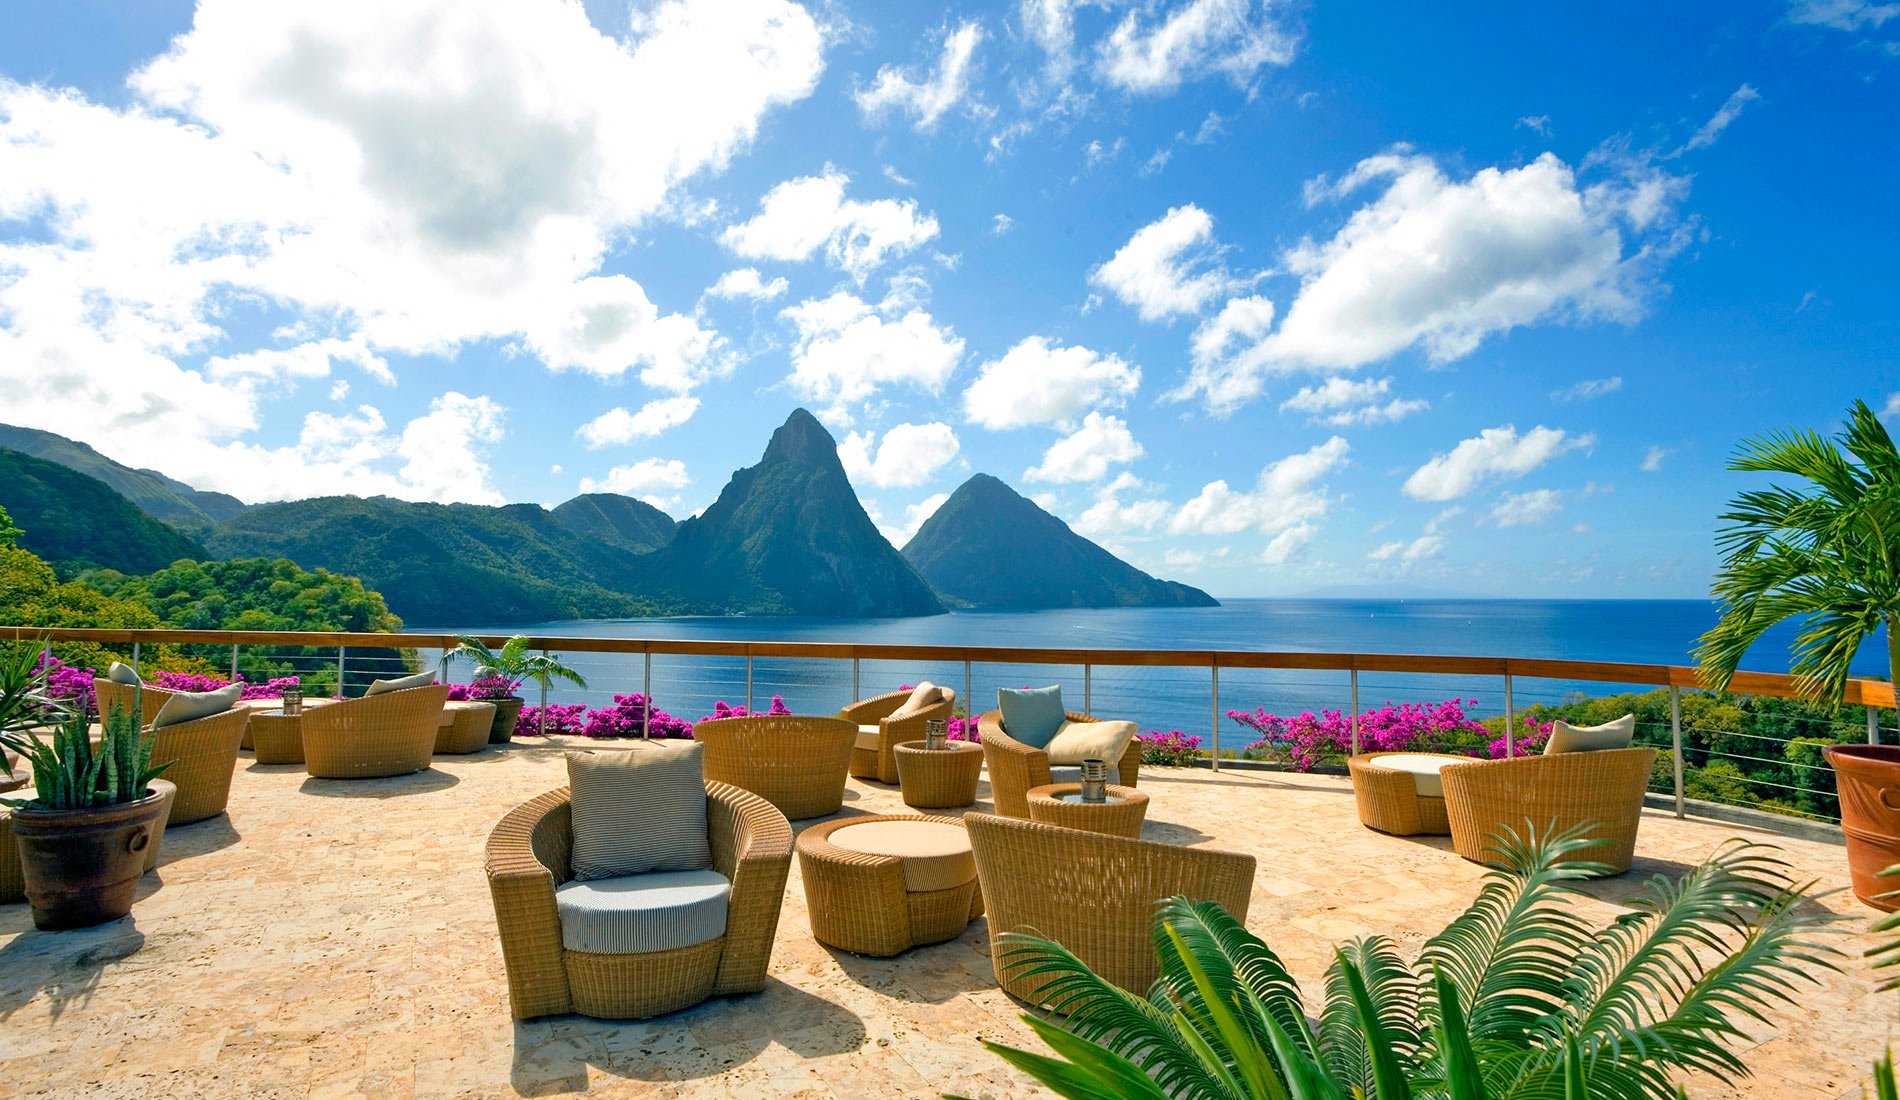 Hôtel de luxe Jade Mountain resort 5 étoiles Sainte-Lucie caraïbes piscine à débordement